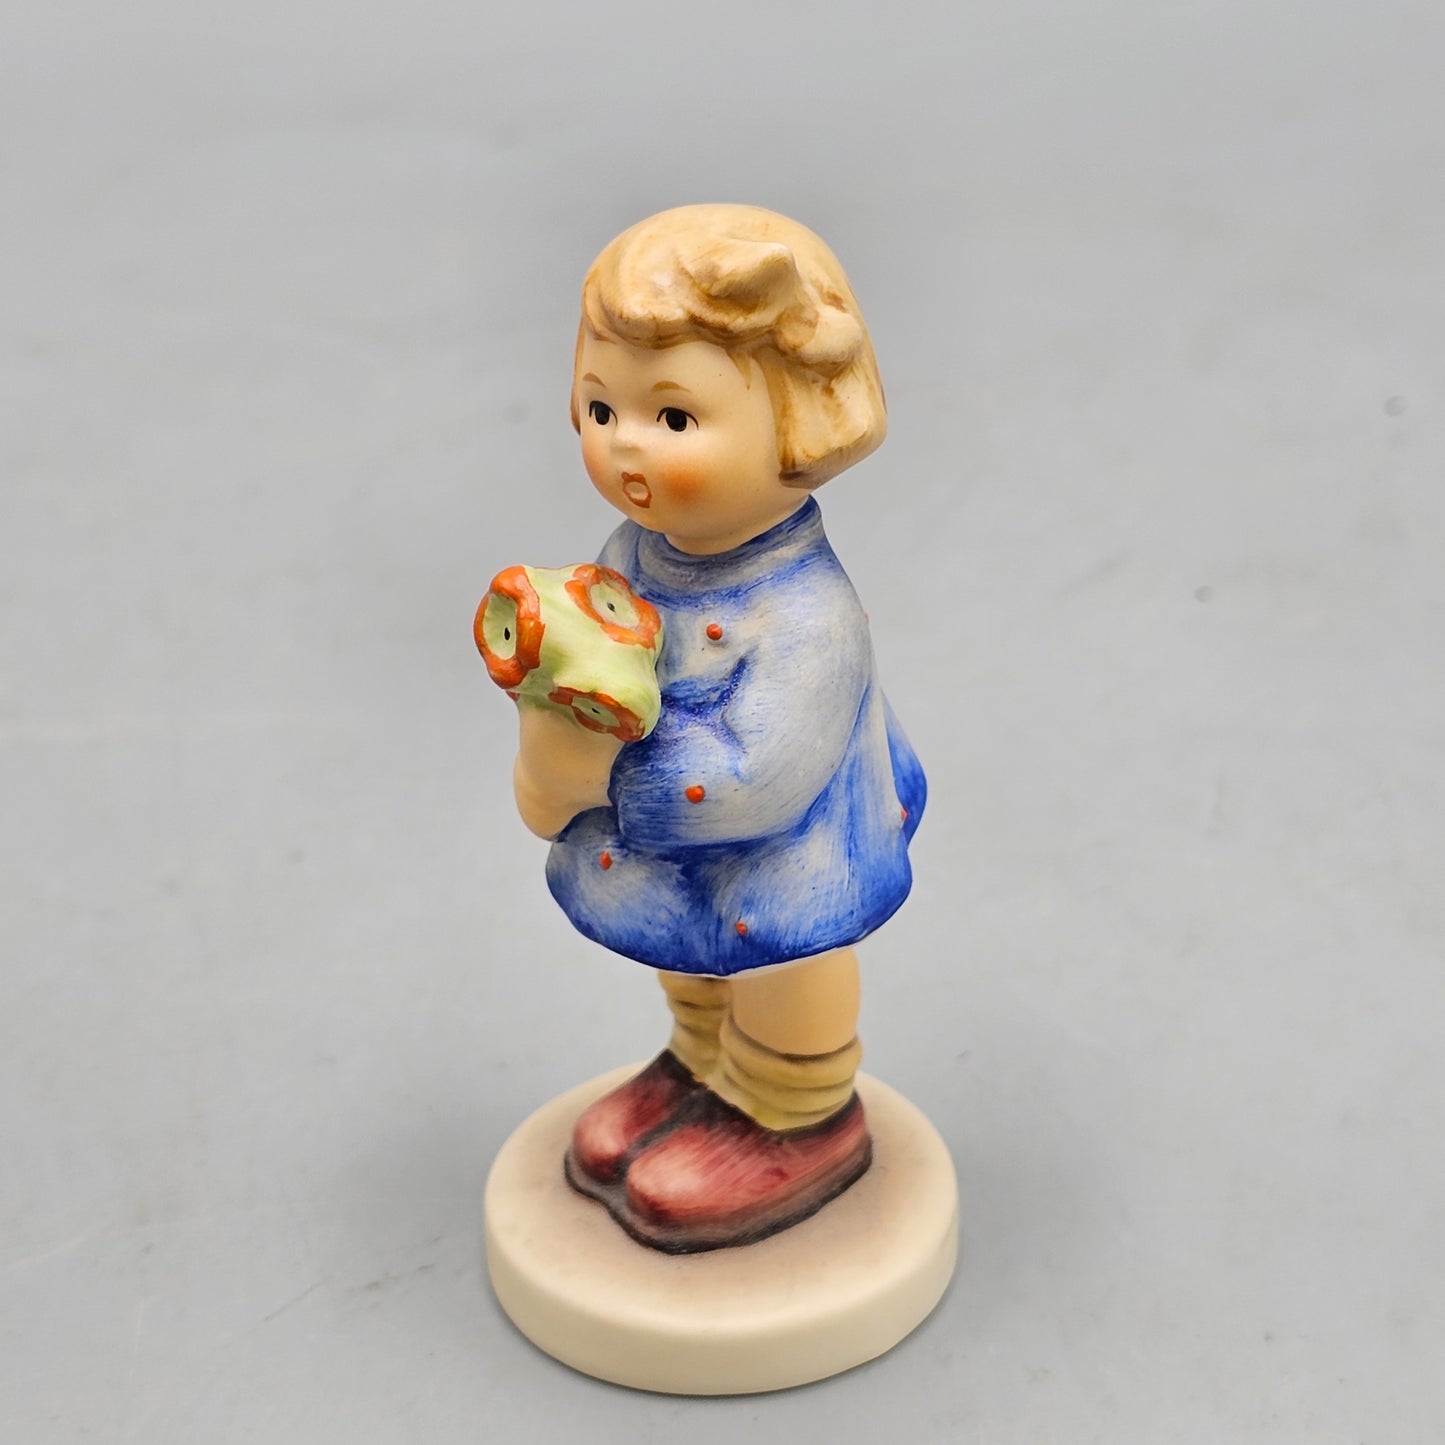 Vintage Goebel Hummel Figurine "Girl With Nosegay"